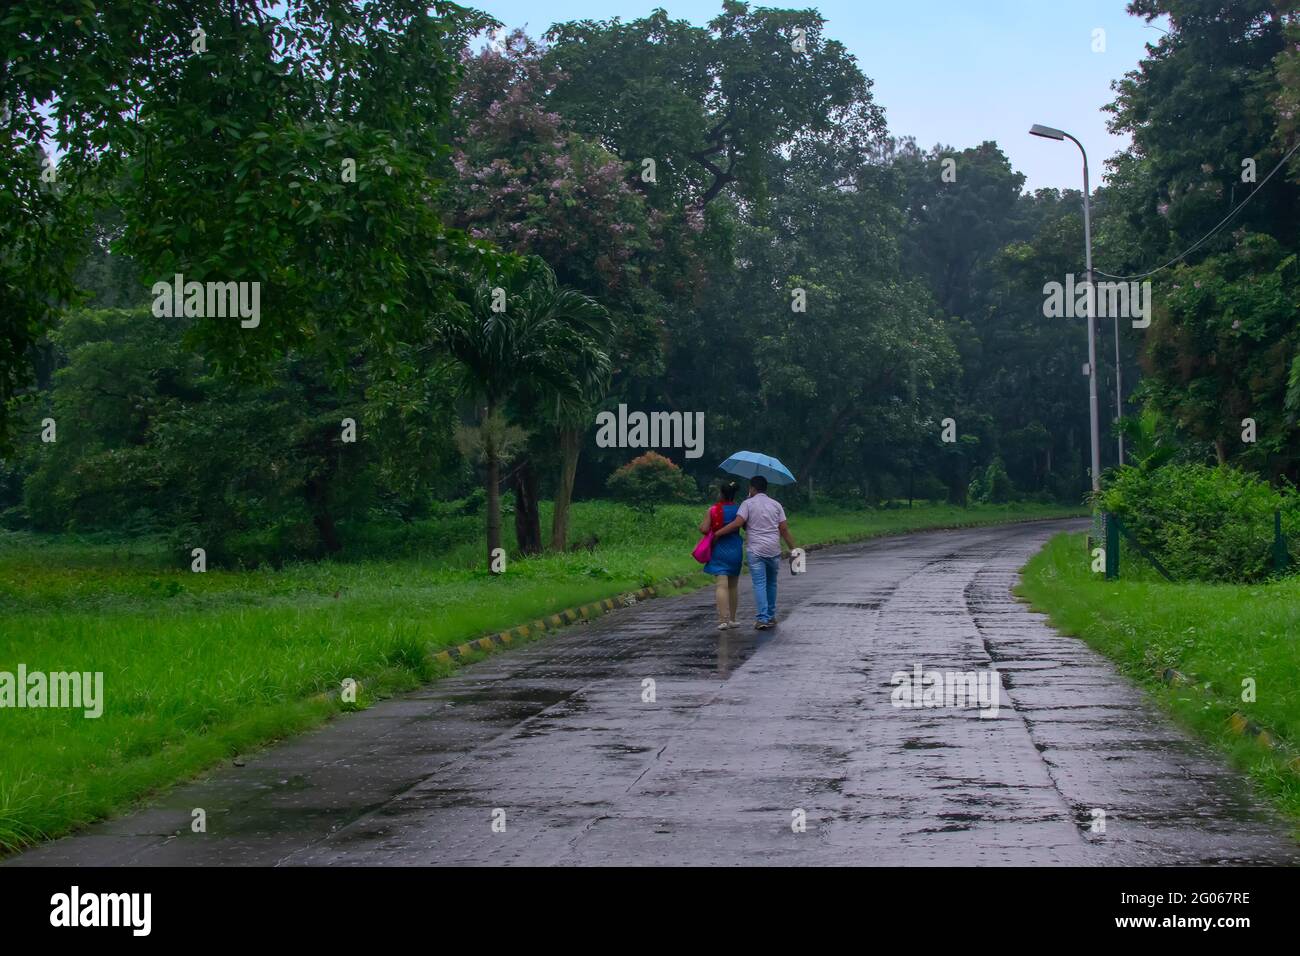 Romantisches Paar mit einem blauen Regenschirm, der in der Natur die Straße entlang läuft, konzeptuelles Stockbild der Regenzeit, Kalkutta, Westbengalen. Monsun o Stockfoto